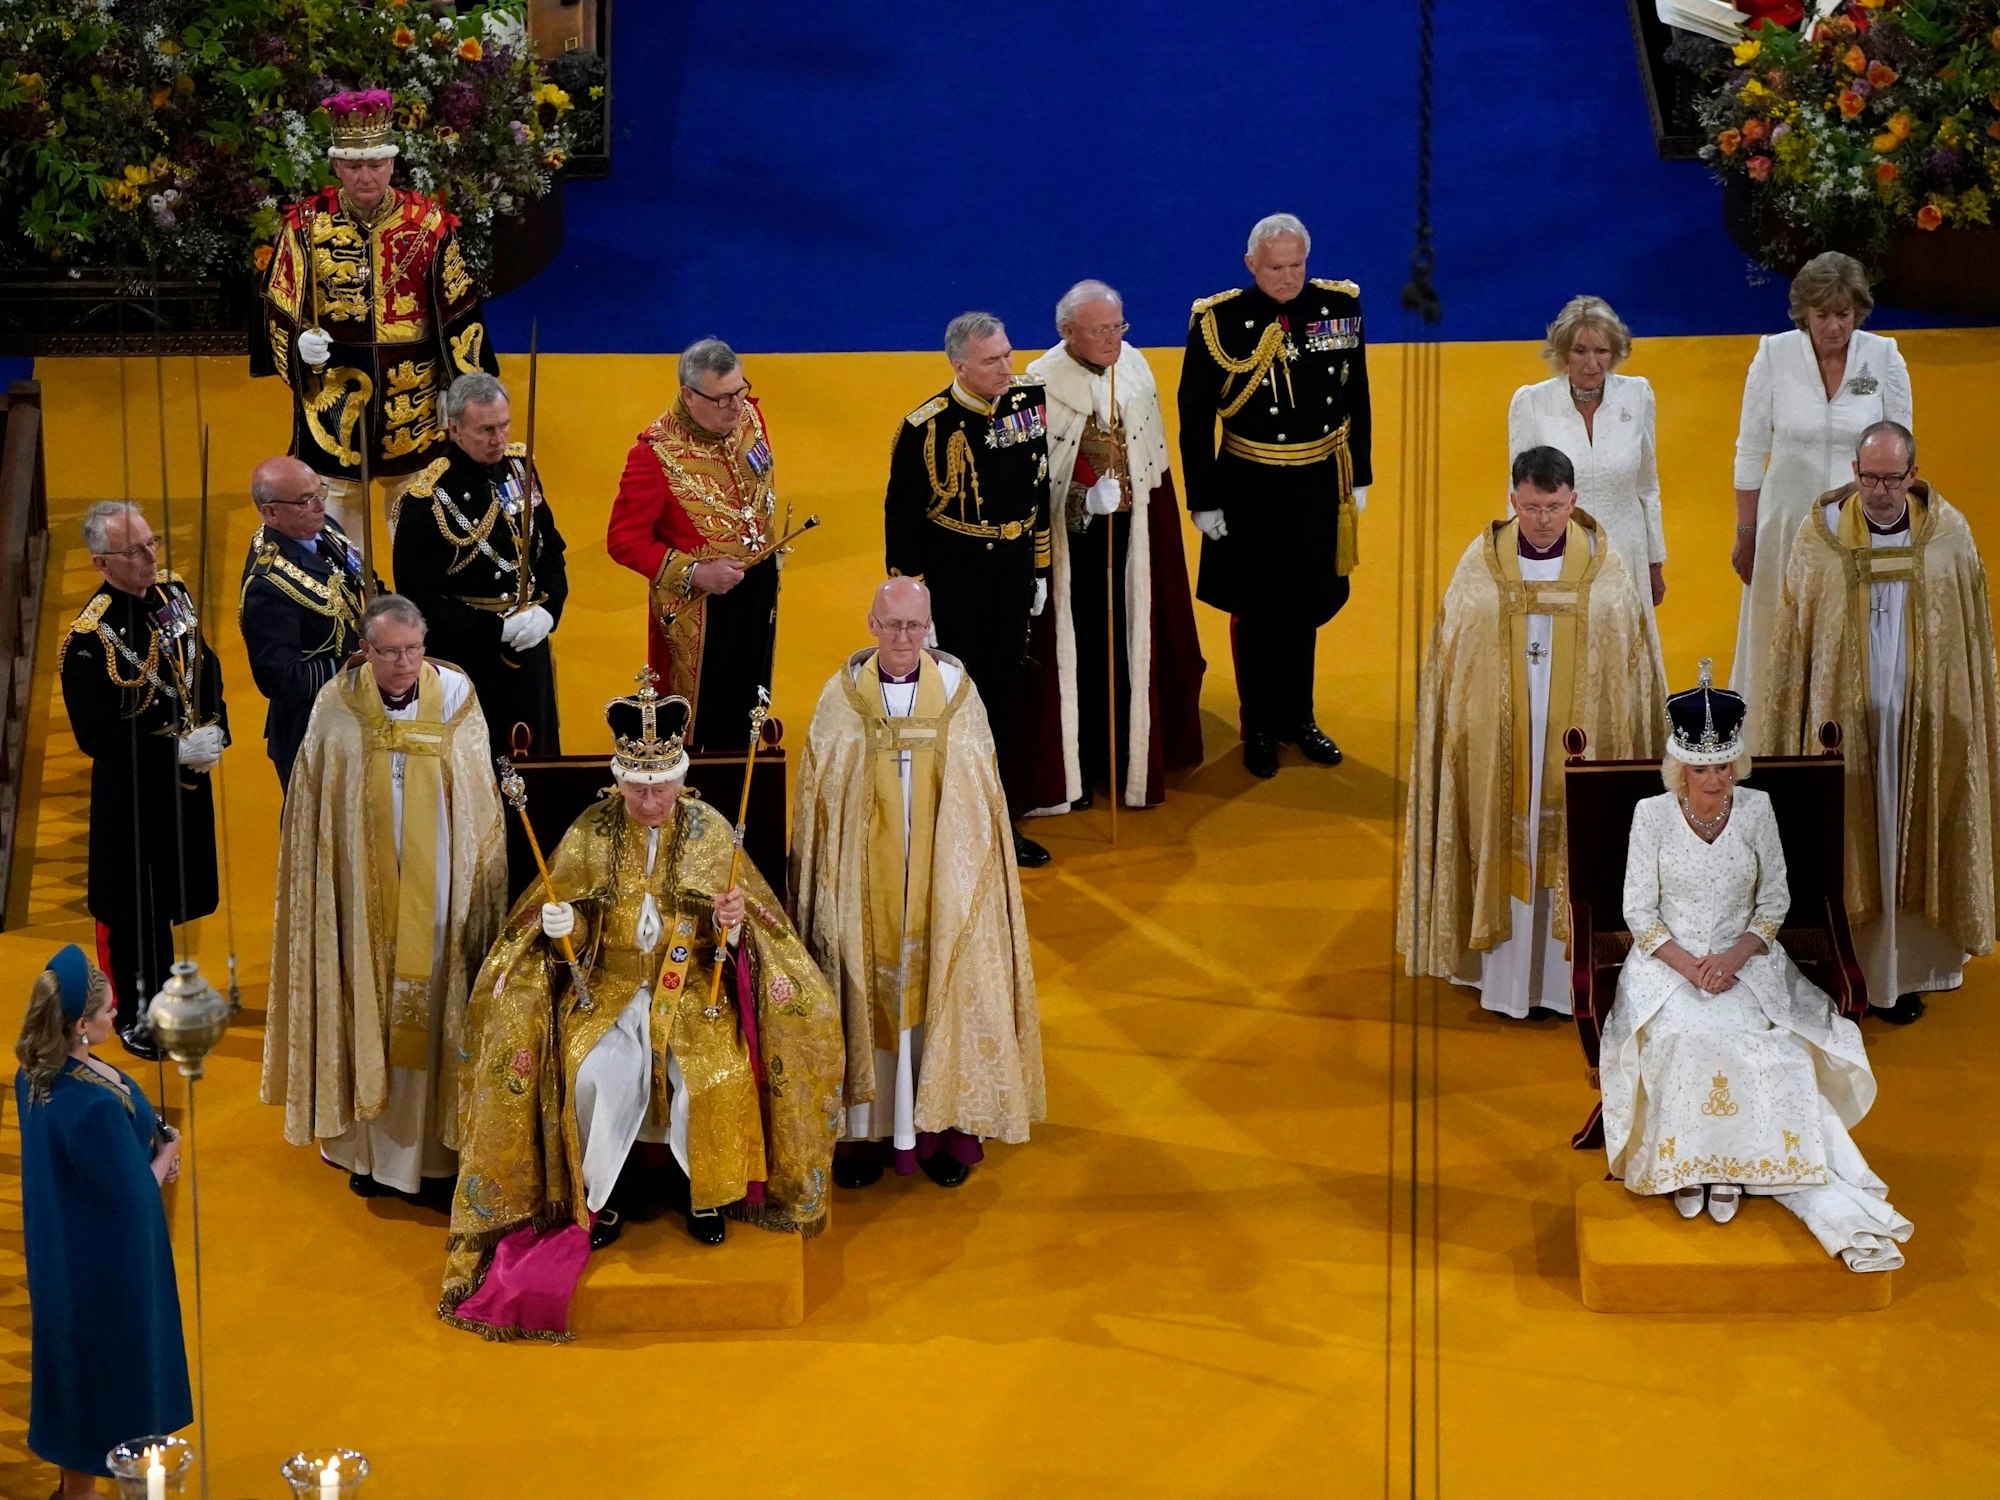 König Charles III. mit der St. Edward's Crown (Edwardskrone) und Königin Camilla mit der Queen Mary's Crown (Krone von Queen Mary) sitzen während der Krönungszeremonie in der Westminster Abbey. Charles und Camilla sind zu König und Königin gekrönt worden - vor den Augen zahlreicher prominenter Gäste aus aller Welt.